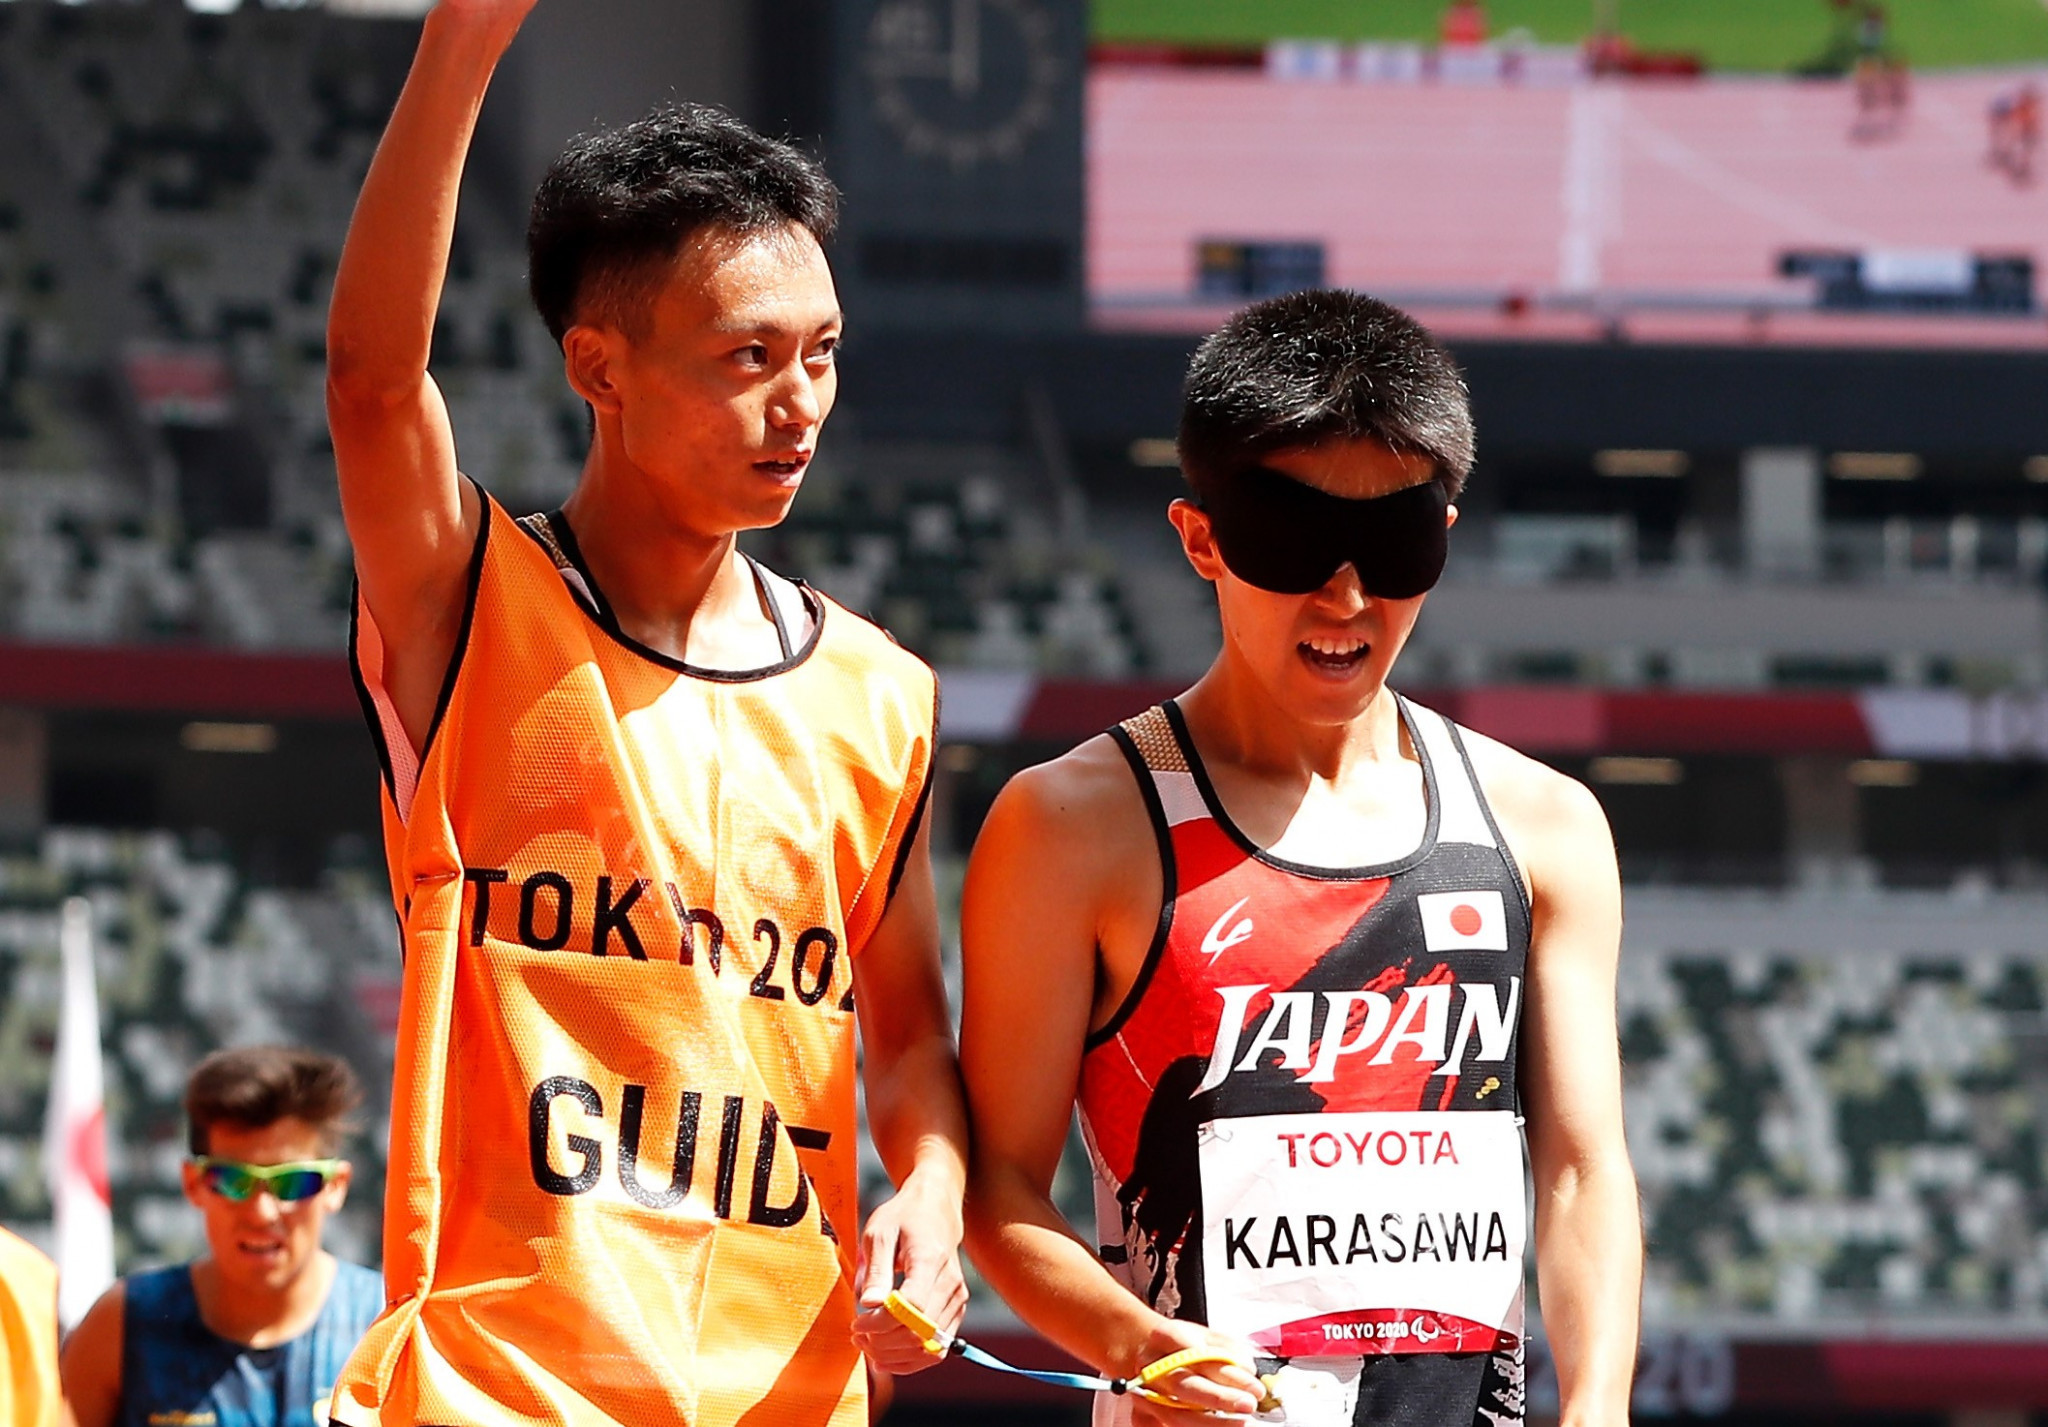 Records broken at Tokyo Legacy Half Marathon